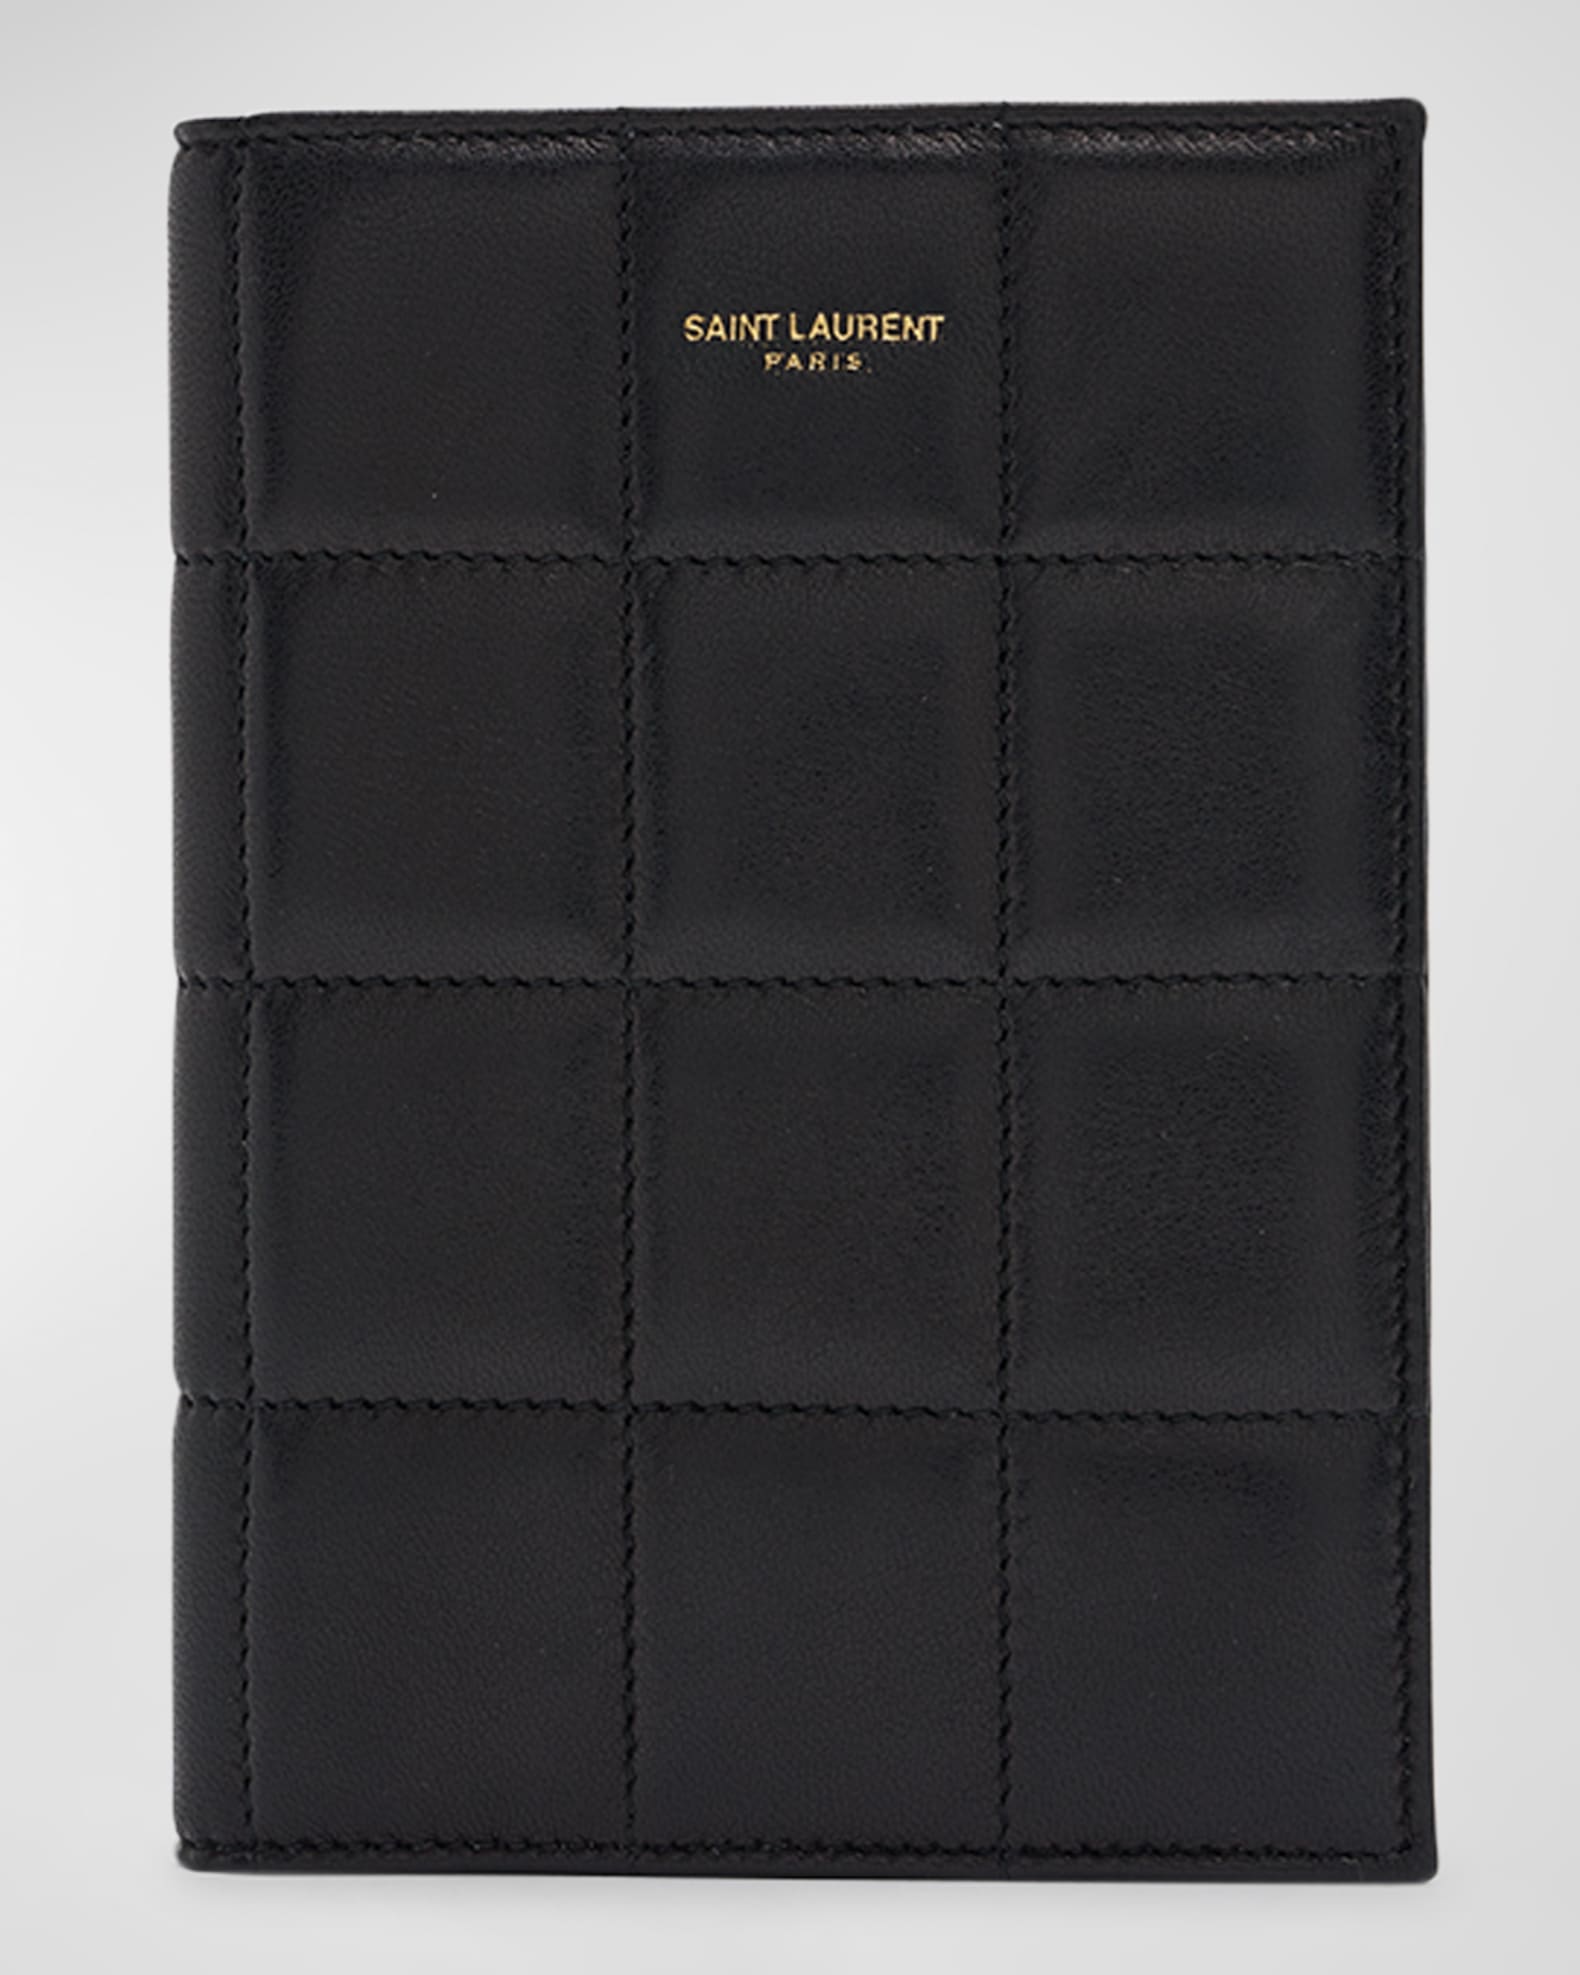 Shop Saint Laurent Unisex Street Style Passport Cases